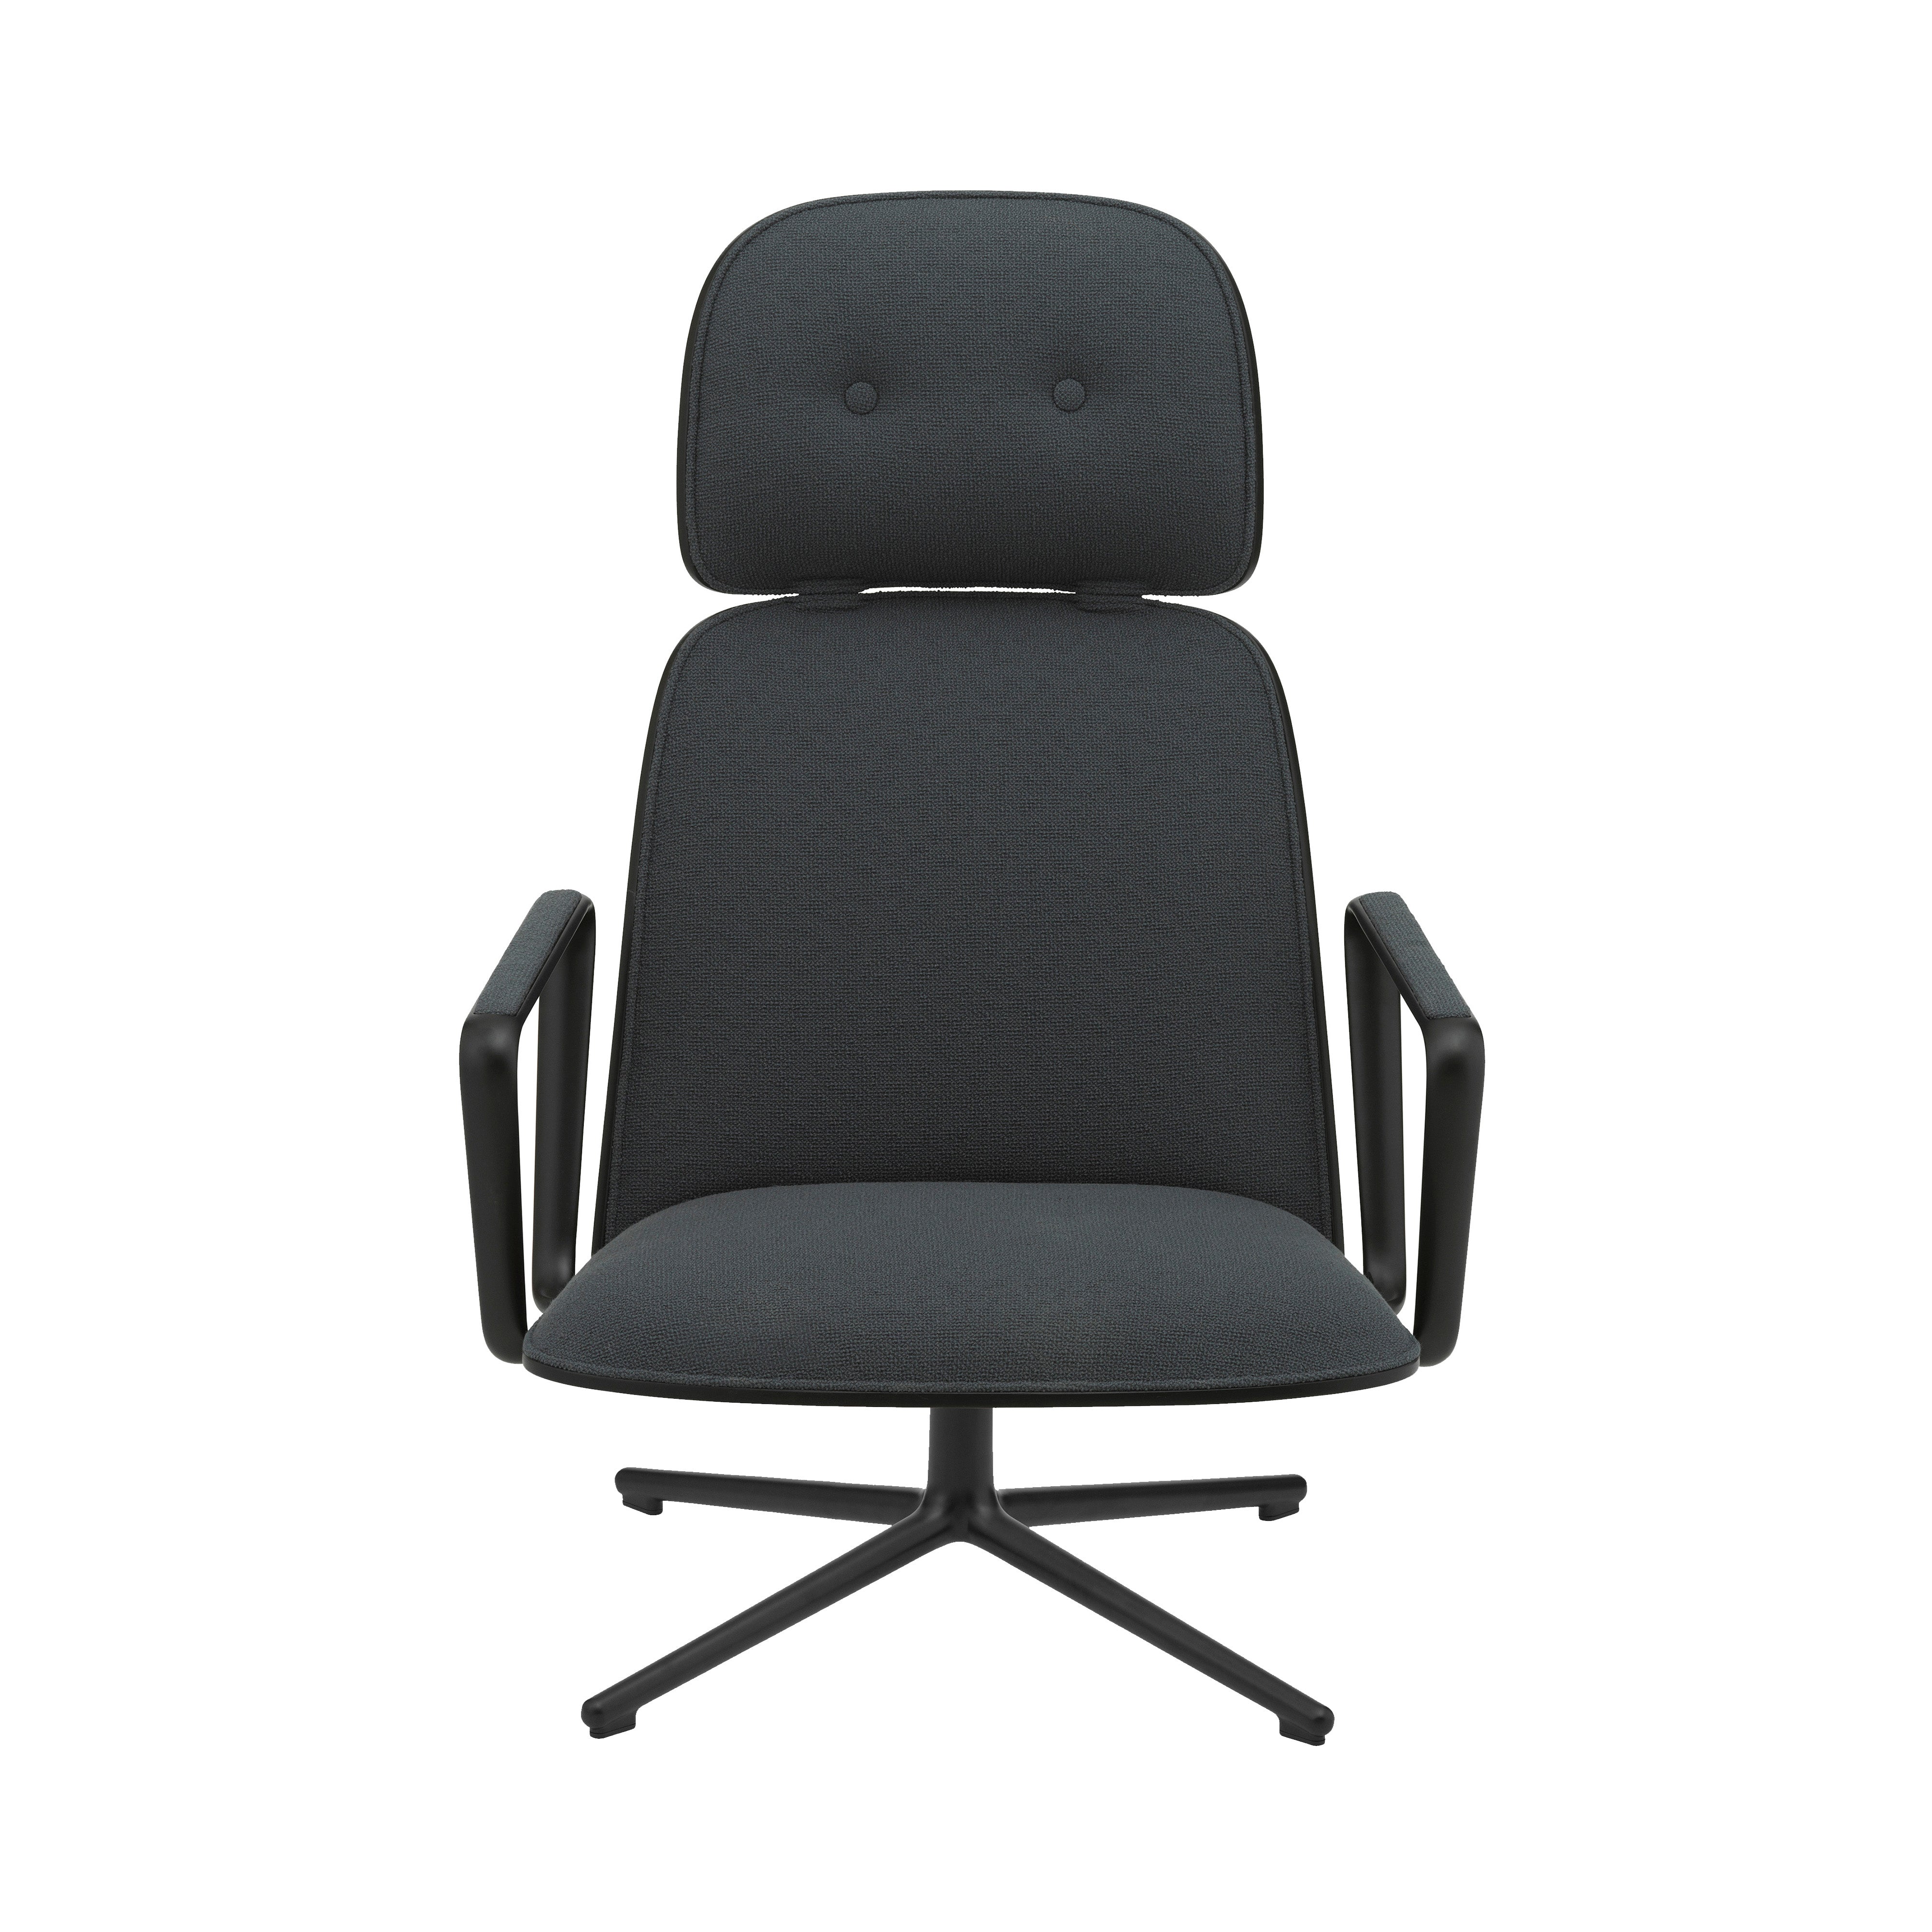 Pad Lounge Chair High Swivel: Black Aluminum + Black Oak + Without Tilt